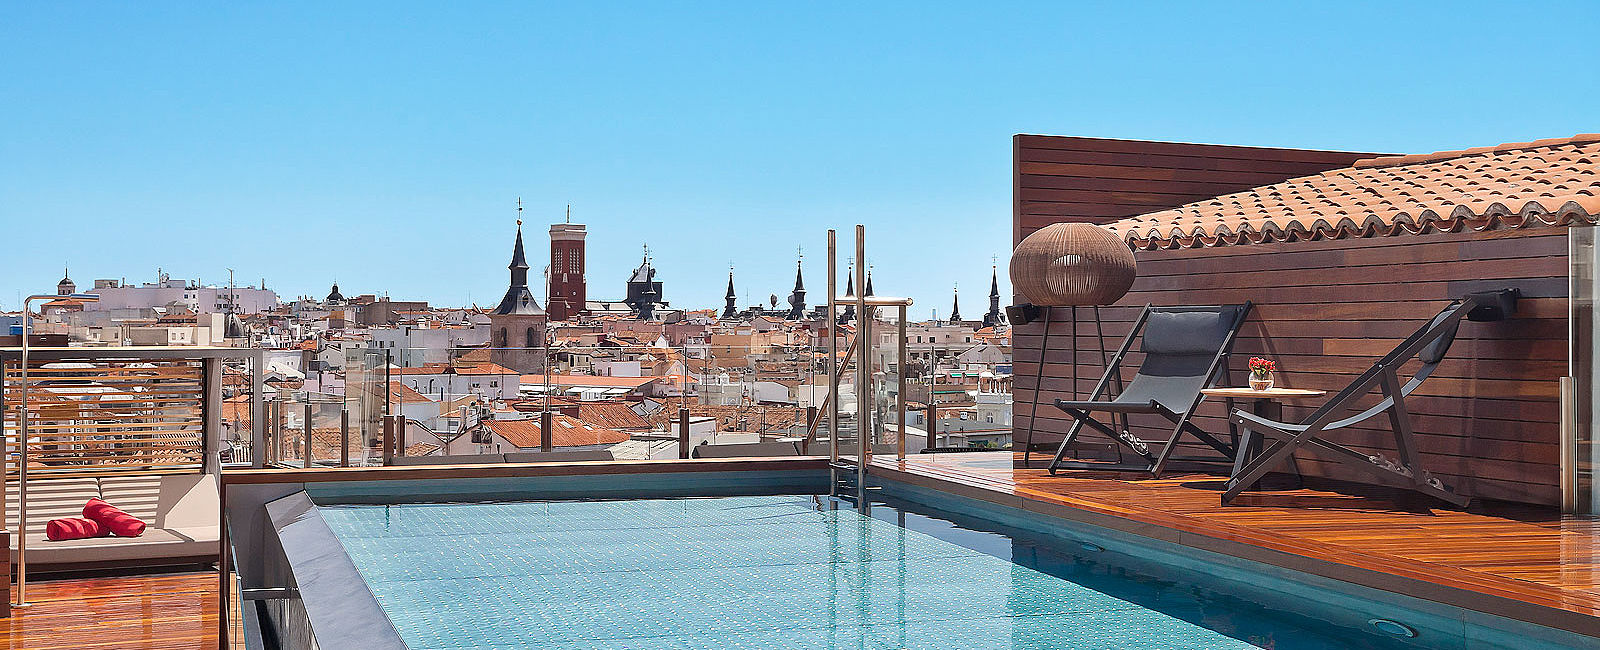 HOTEL TIPPS
 Gran Melia Palacio de los Duques, Madrid 
 Luxus auf höchstem Niveau 